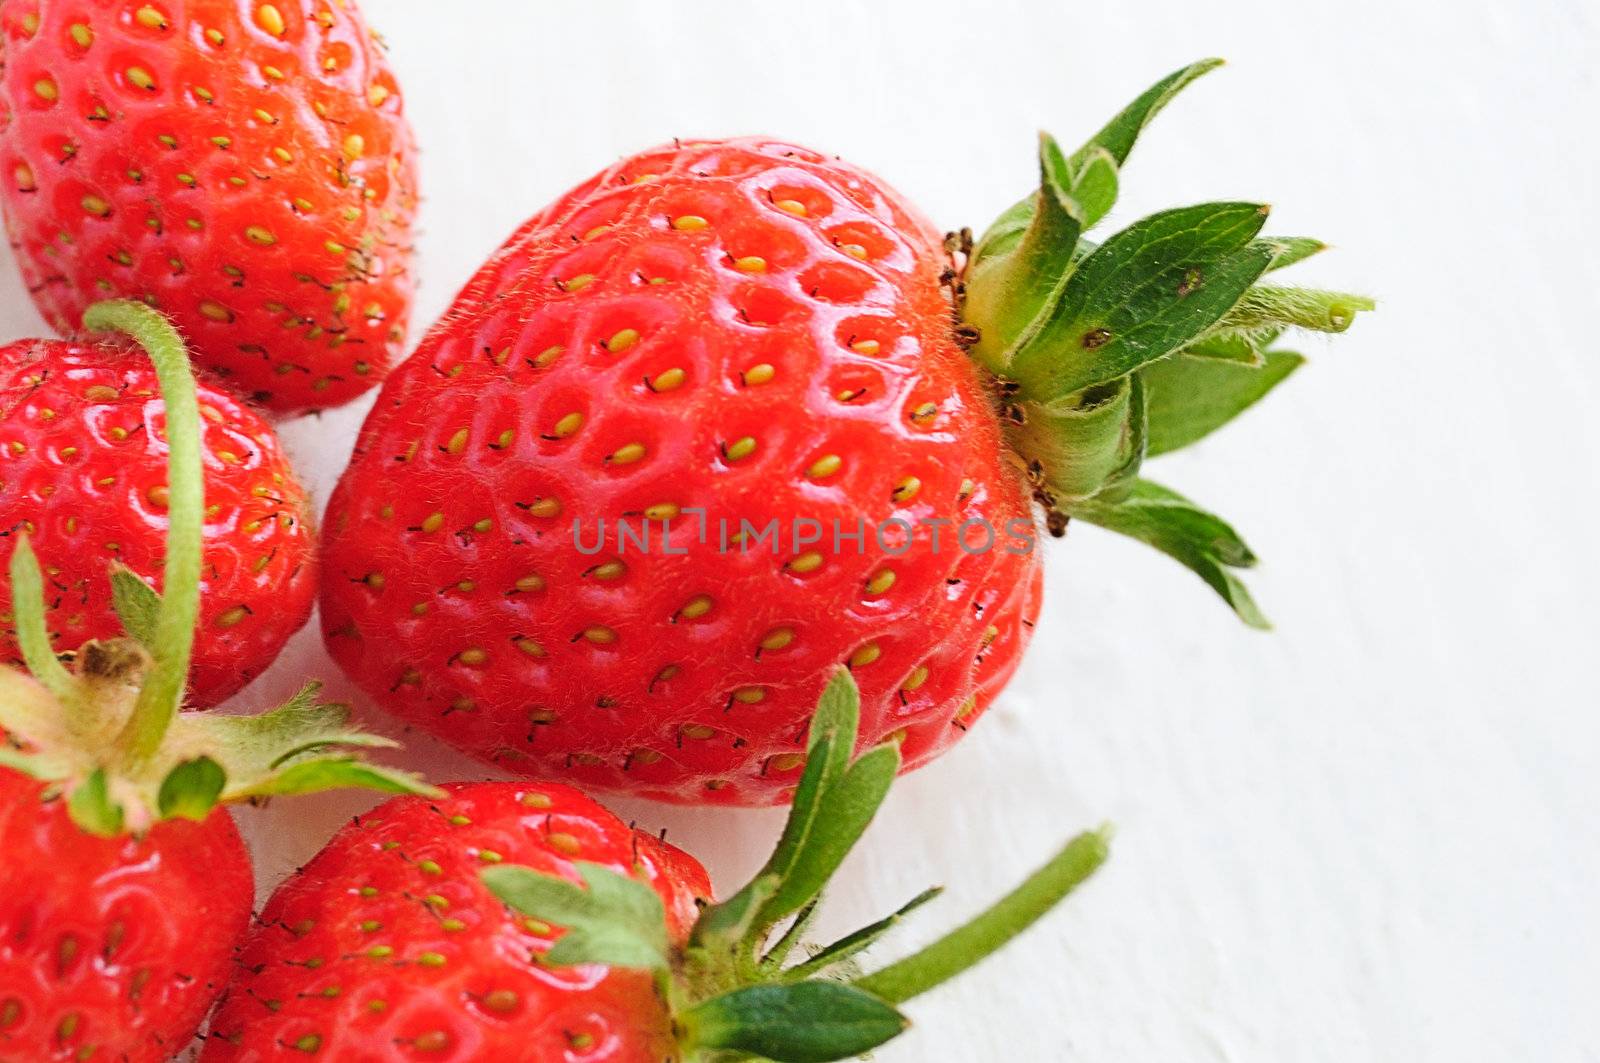 strawberries by mettus